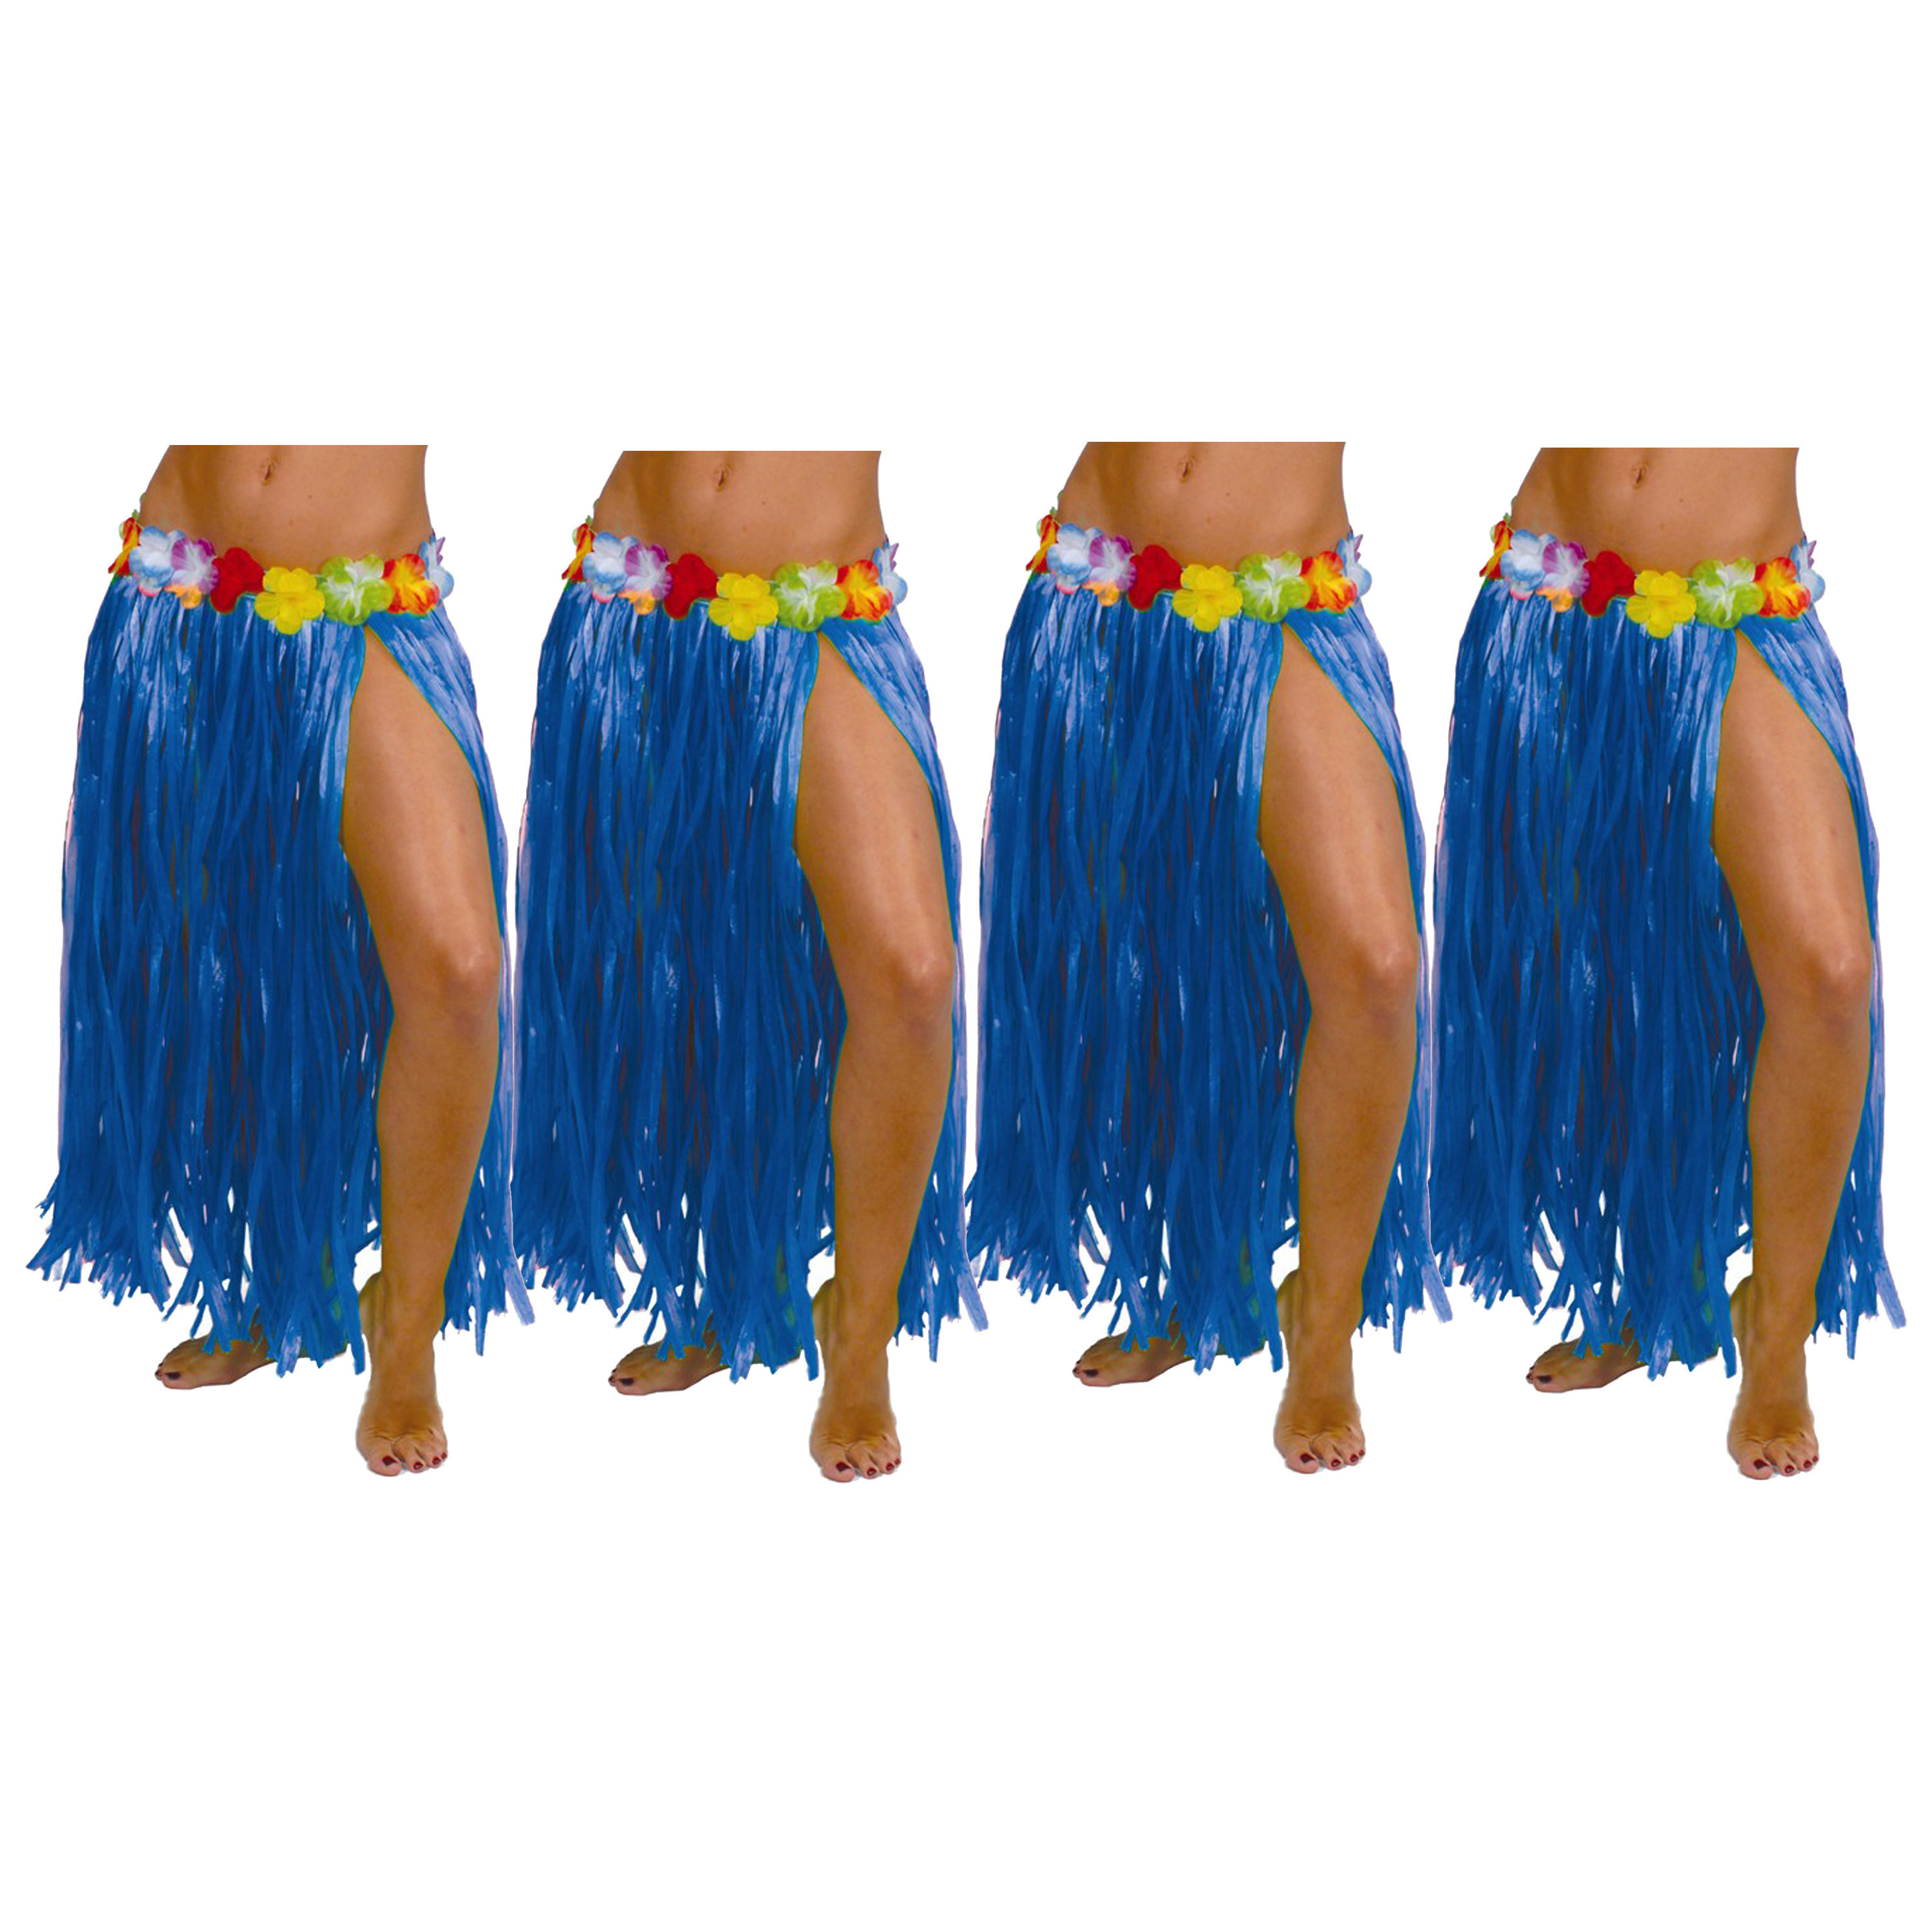 Hawaii verkleed rokje - 4x - voor volwassenen - blauw - 75 cm - rieten hoela rokje - tropisch